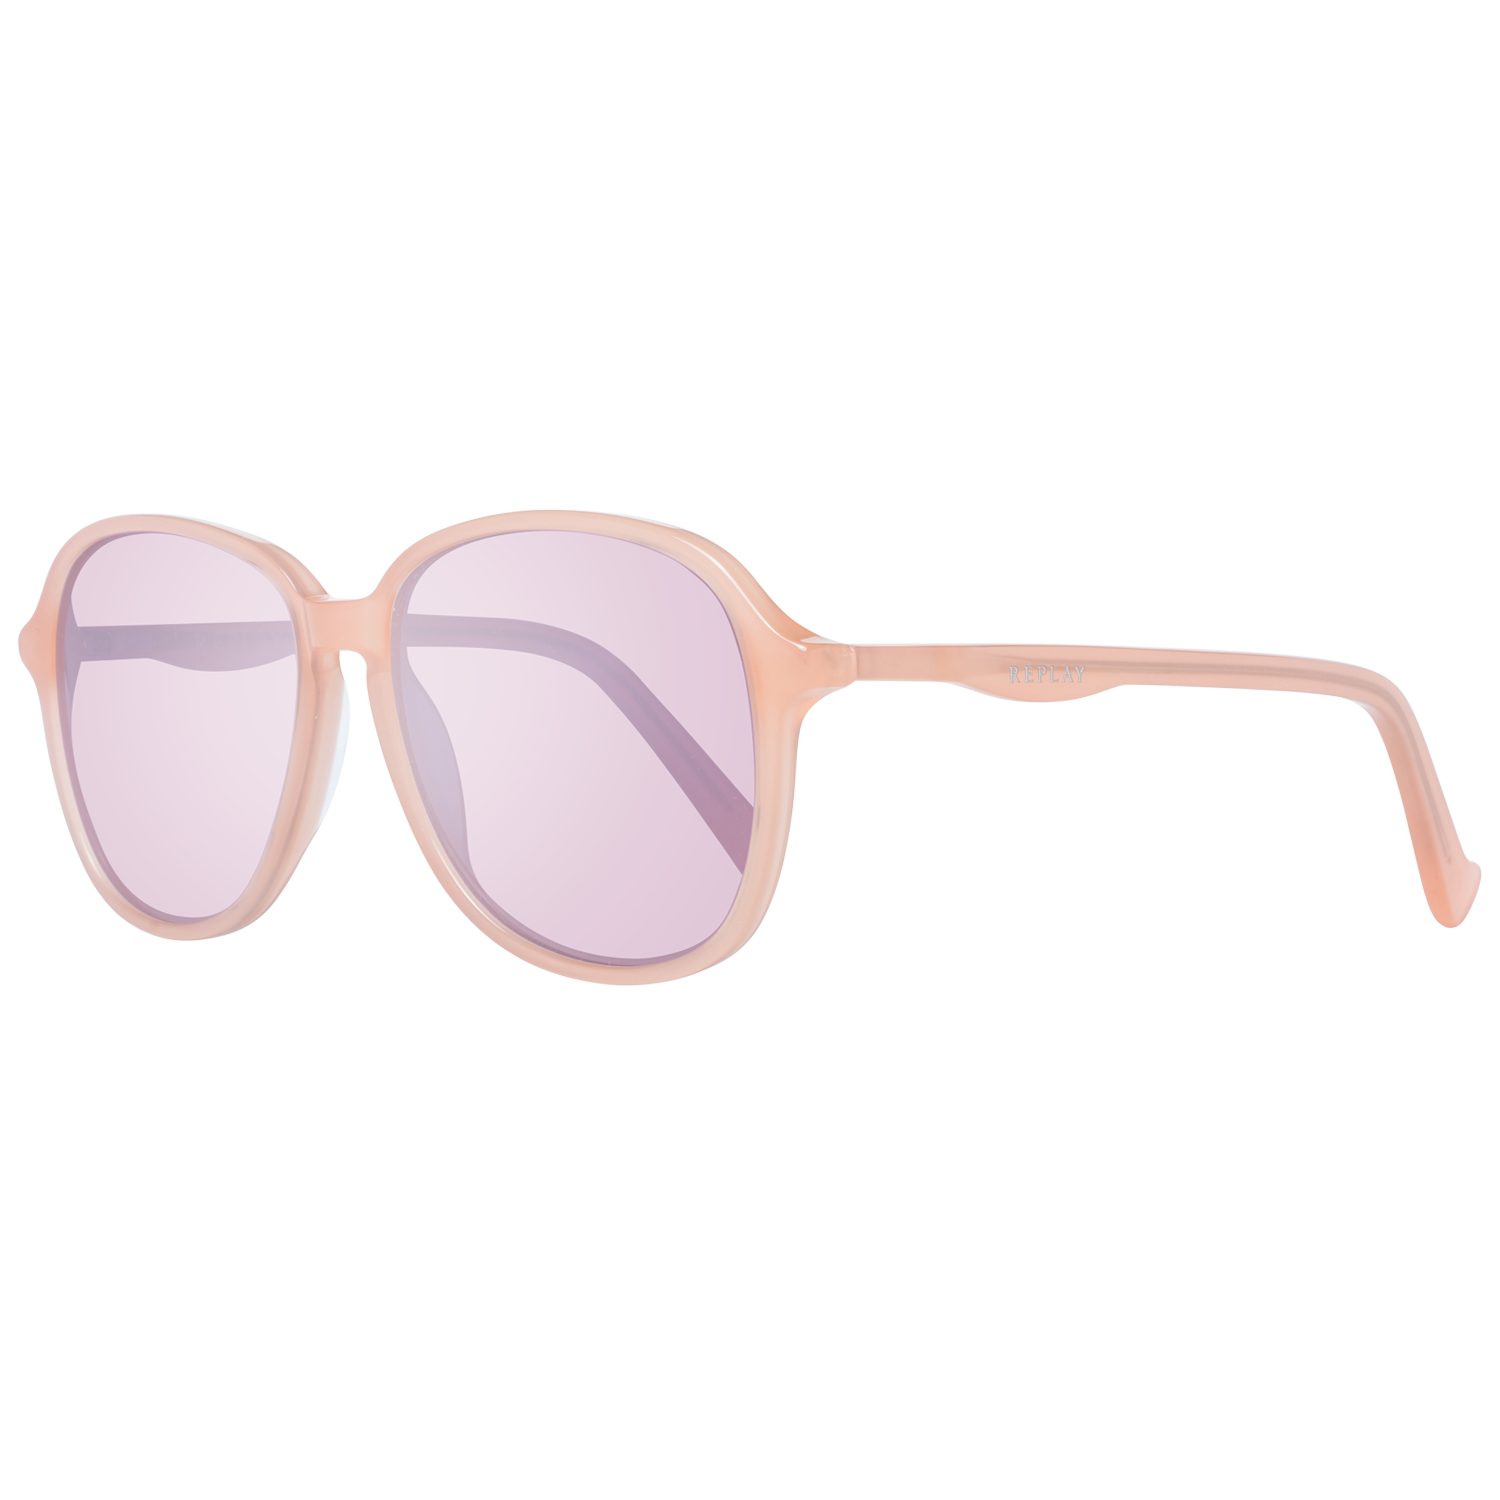 Replay Sonnenbrille »Replay Sonnenbrille RY203S S04 55 Sunglasses Farbe«  online kaufen | OTTO